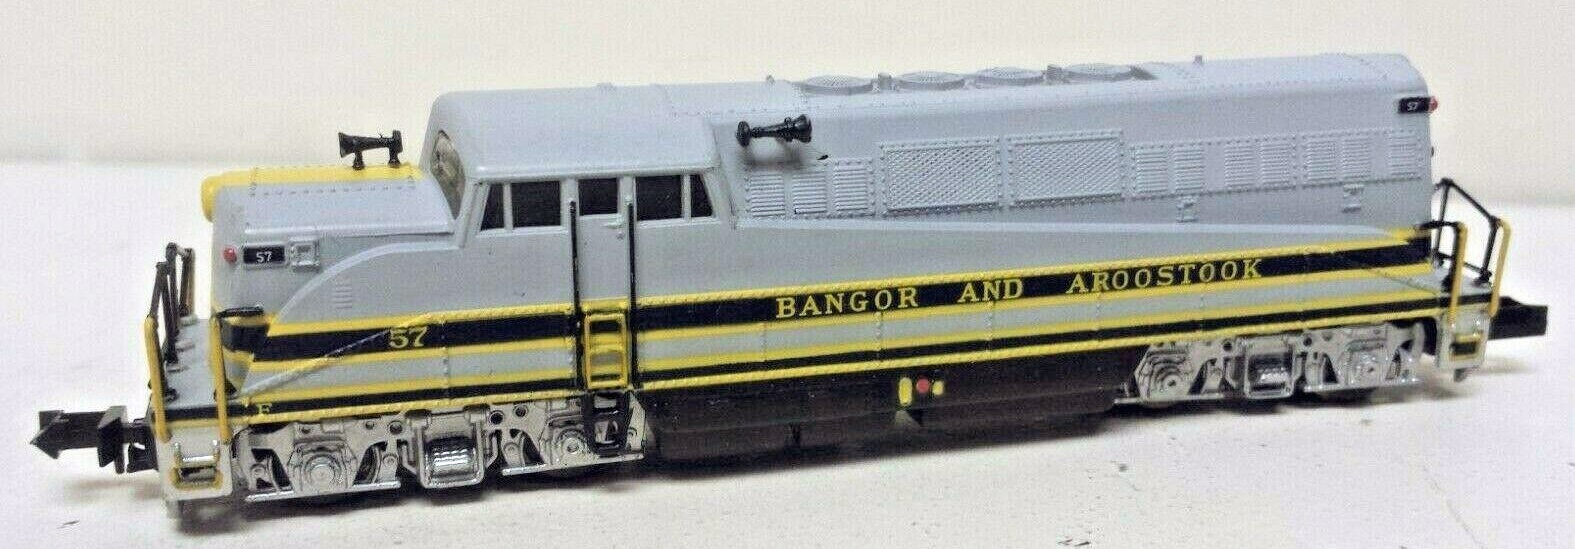 N Scale - Life-Like - 7907 - Locomotive, Diesel, EMD BL2 - Bangor and Aroostook - 57